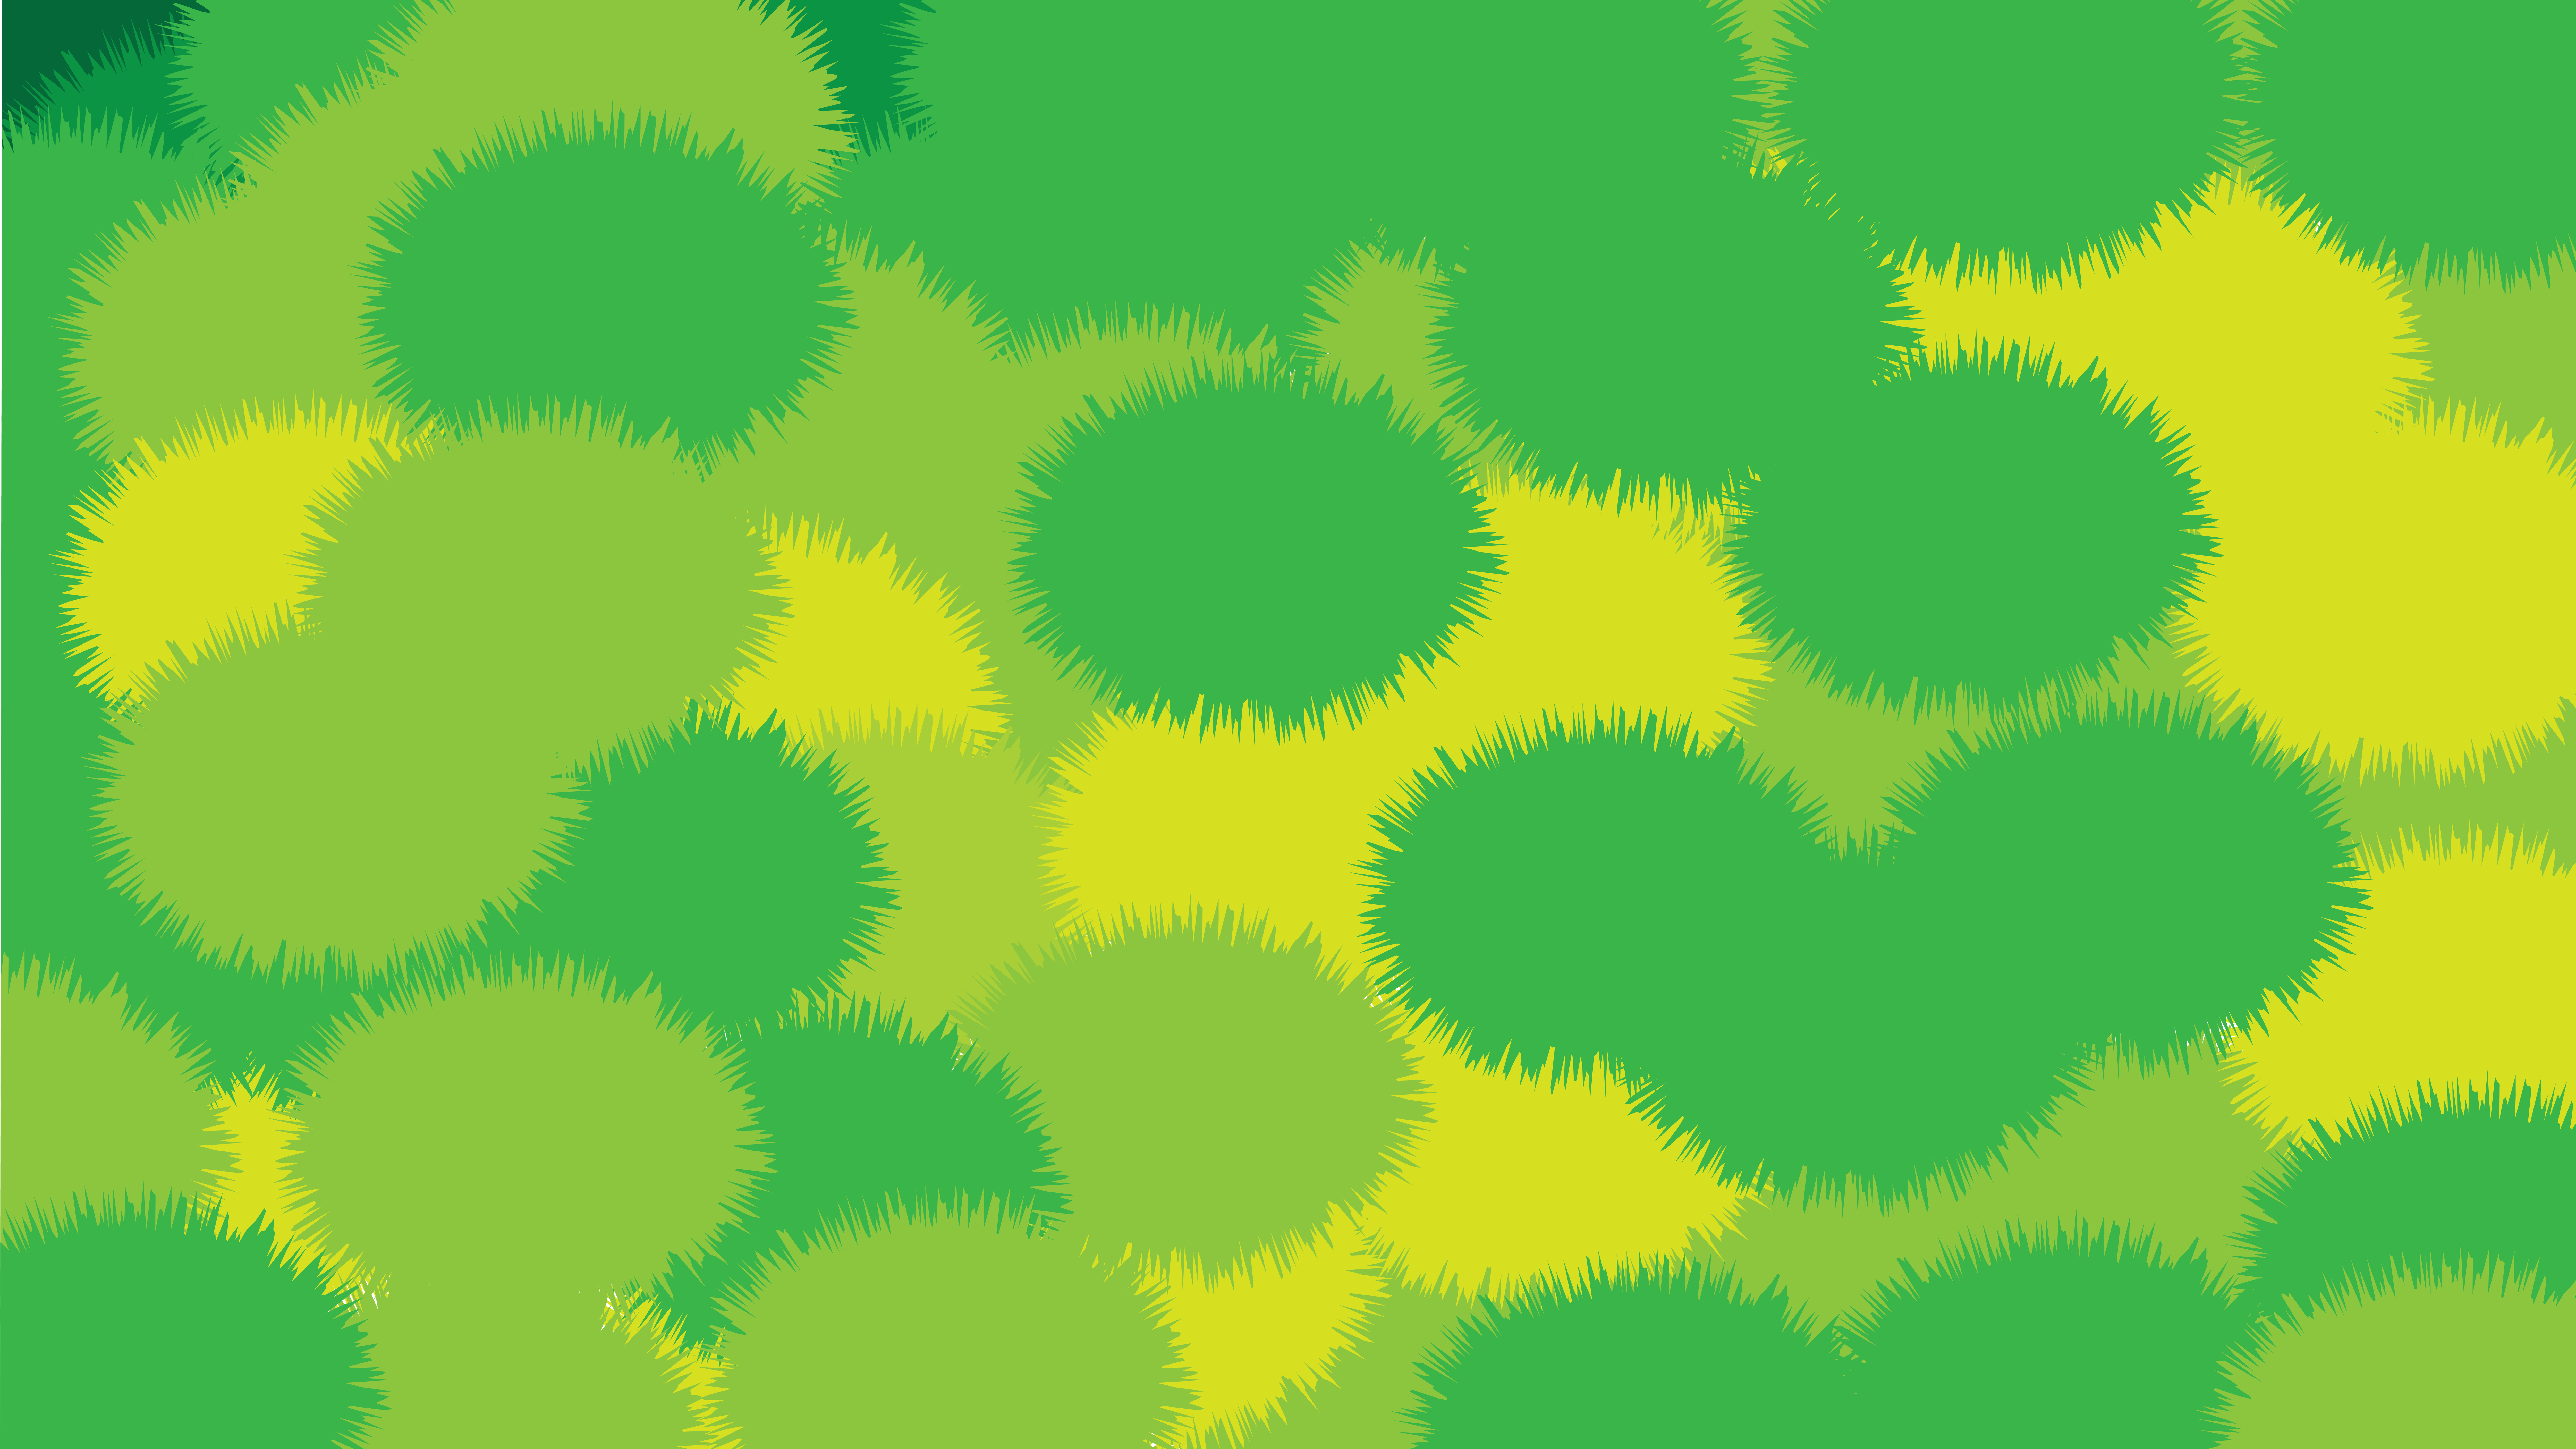 Green grass wallpaper illustration